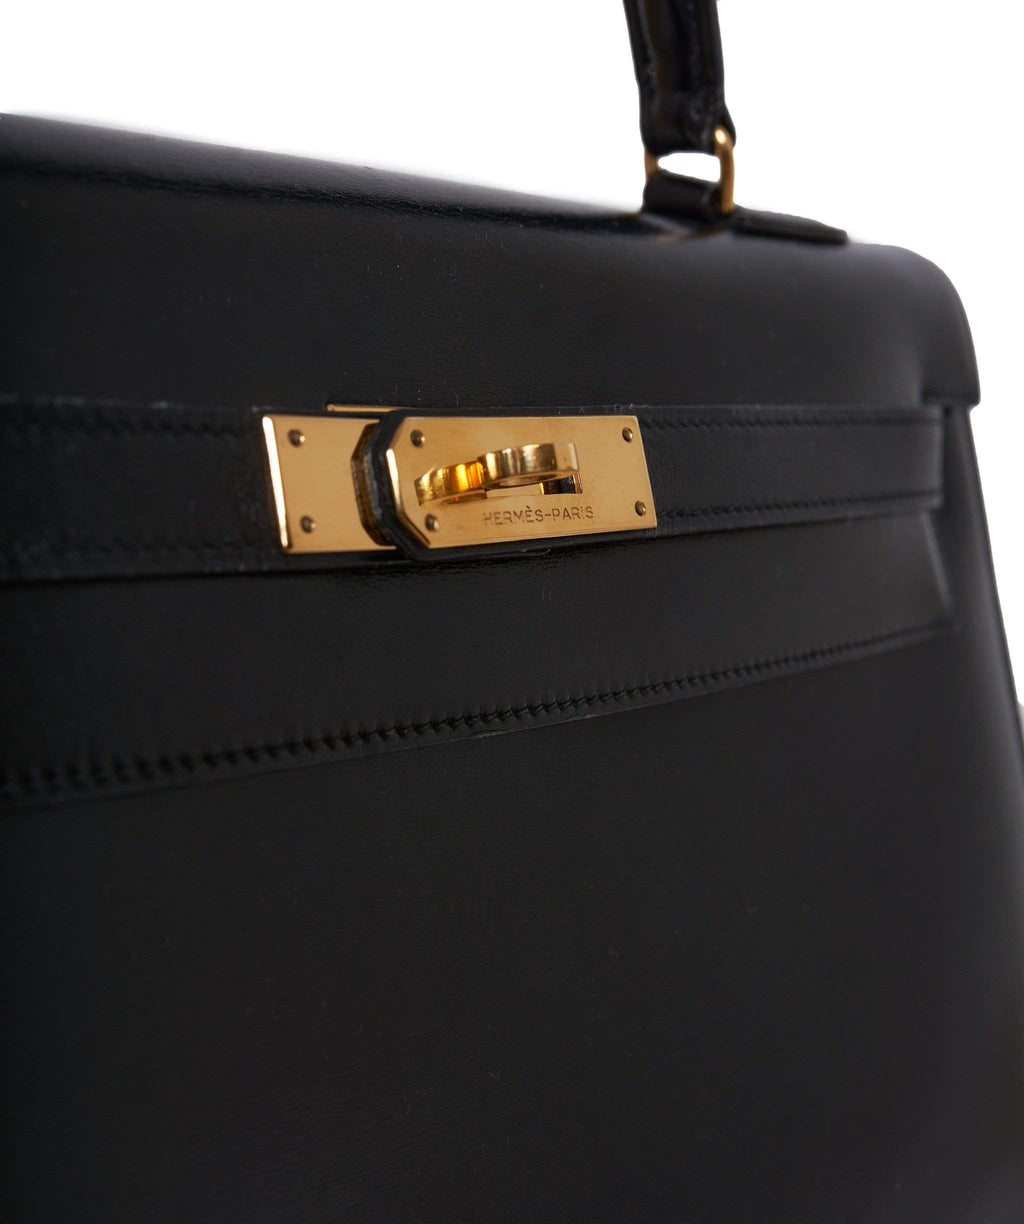 HERMES vintage Kelly 32 bag in black box leather - VALOIS VINTAGE